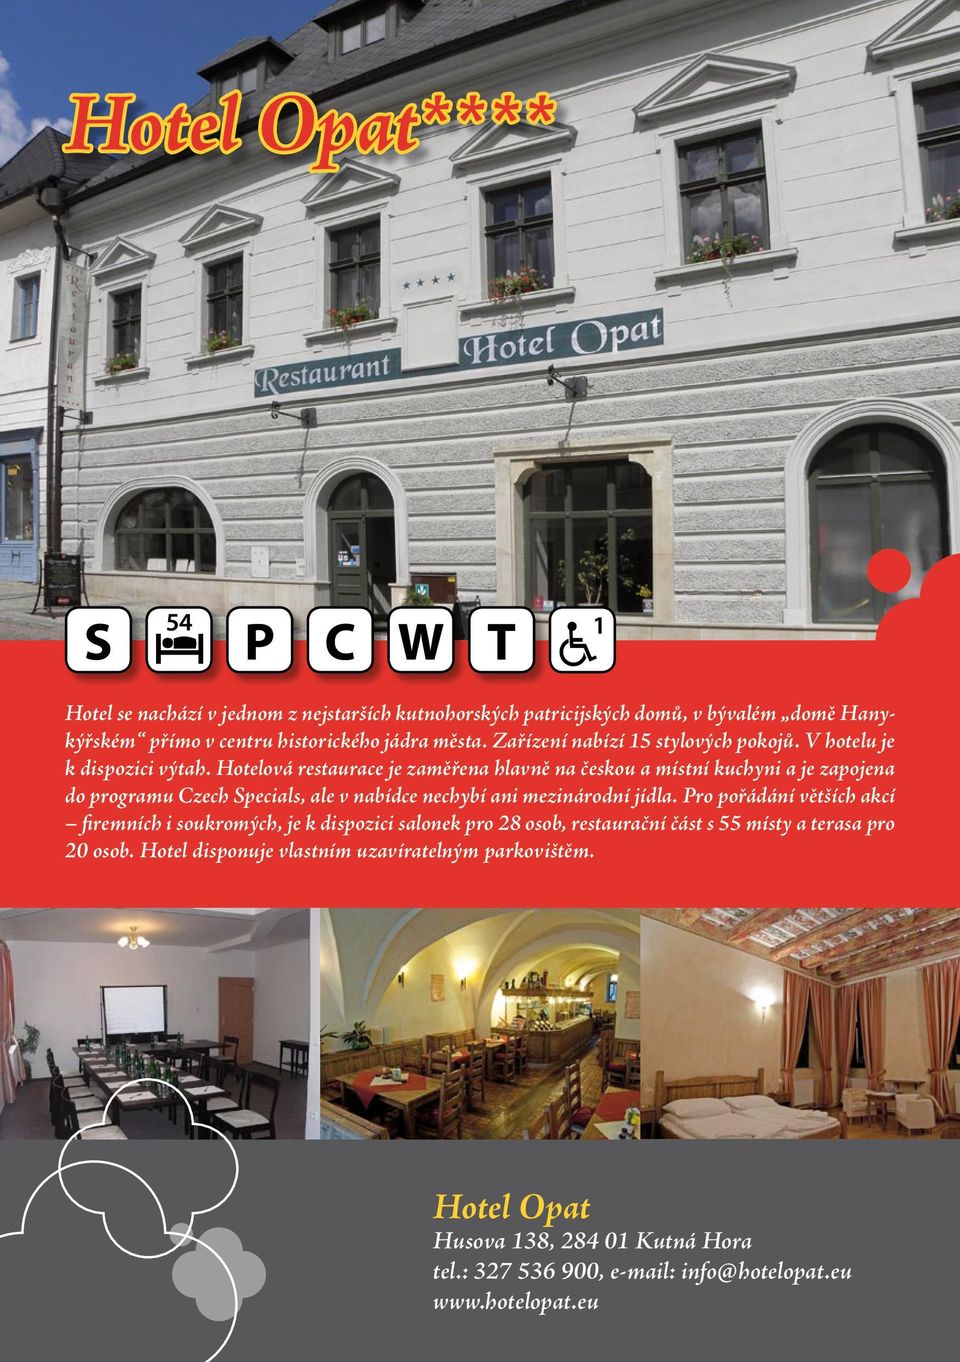 Hotelová restaurace je zaměřena hlavně na českou a místní kuchyni a je zapojena do programu Czech Specials, ale v nabídce nechybí ani mezinárodní jídla.